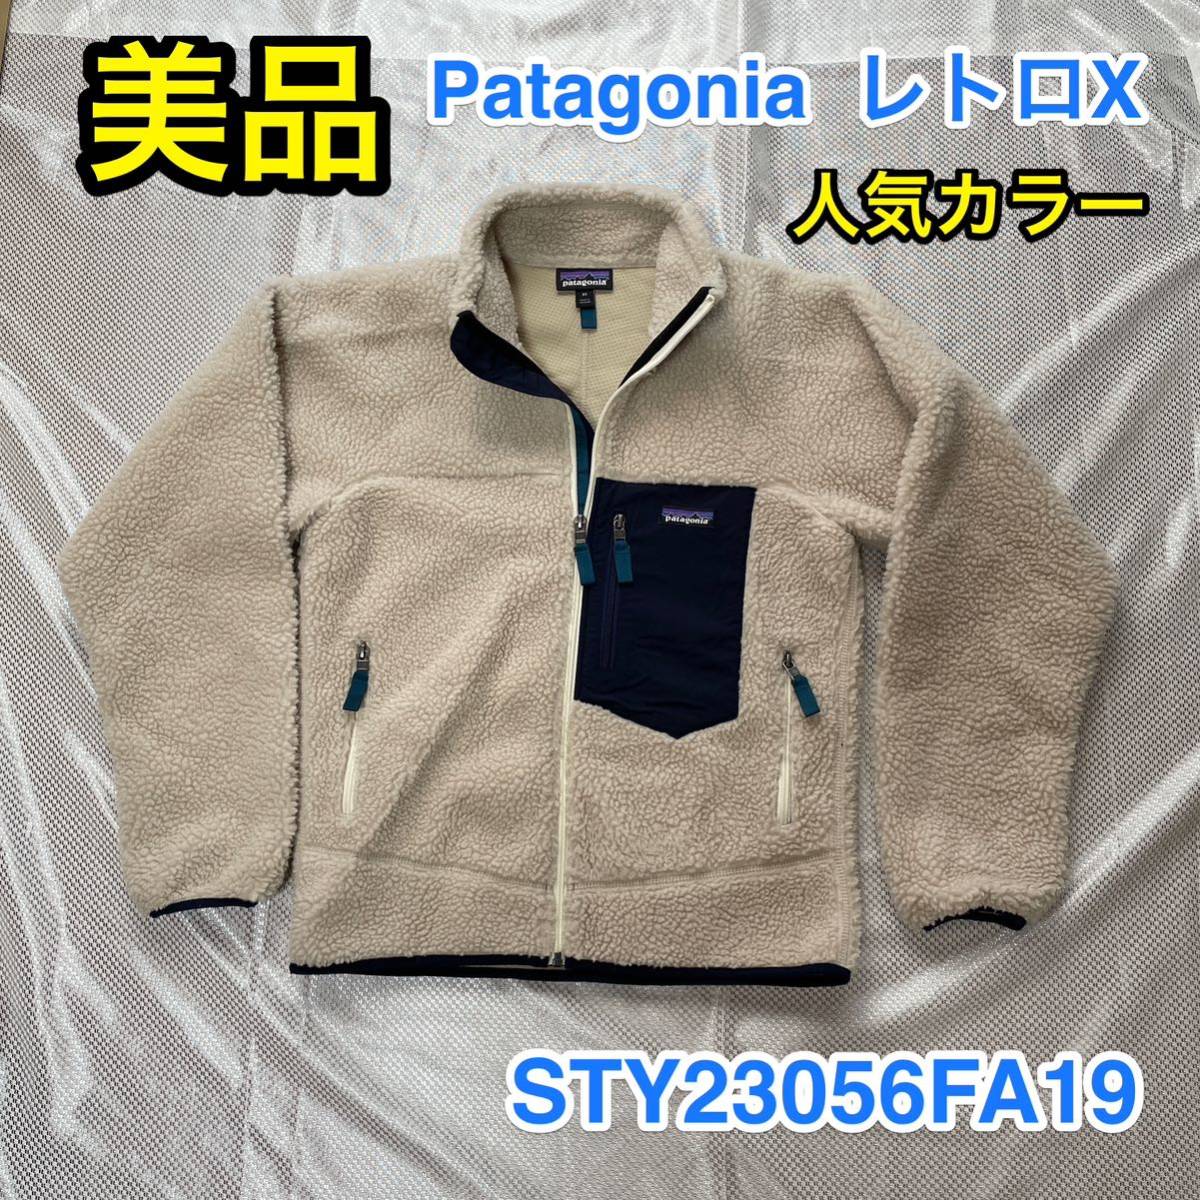 【美品・人気カラー】Patagonia レトロX フリースジャケット メンズ XS 普段S〜Mサイズの方に☆パタゴニア R1 R2 R3 R4好きに☆23056FA19☆